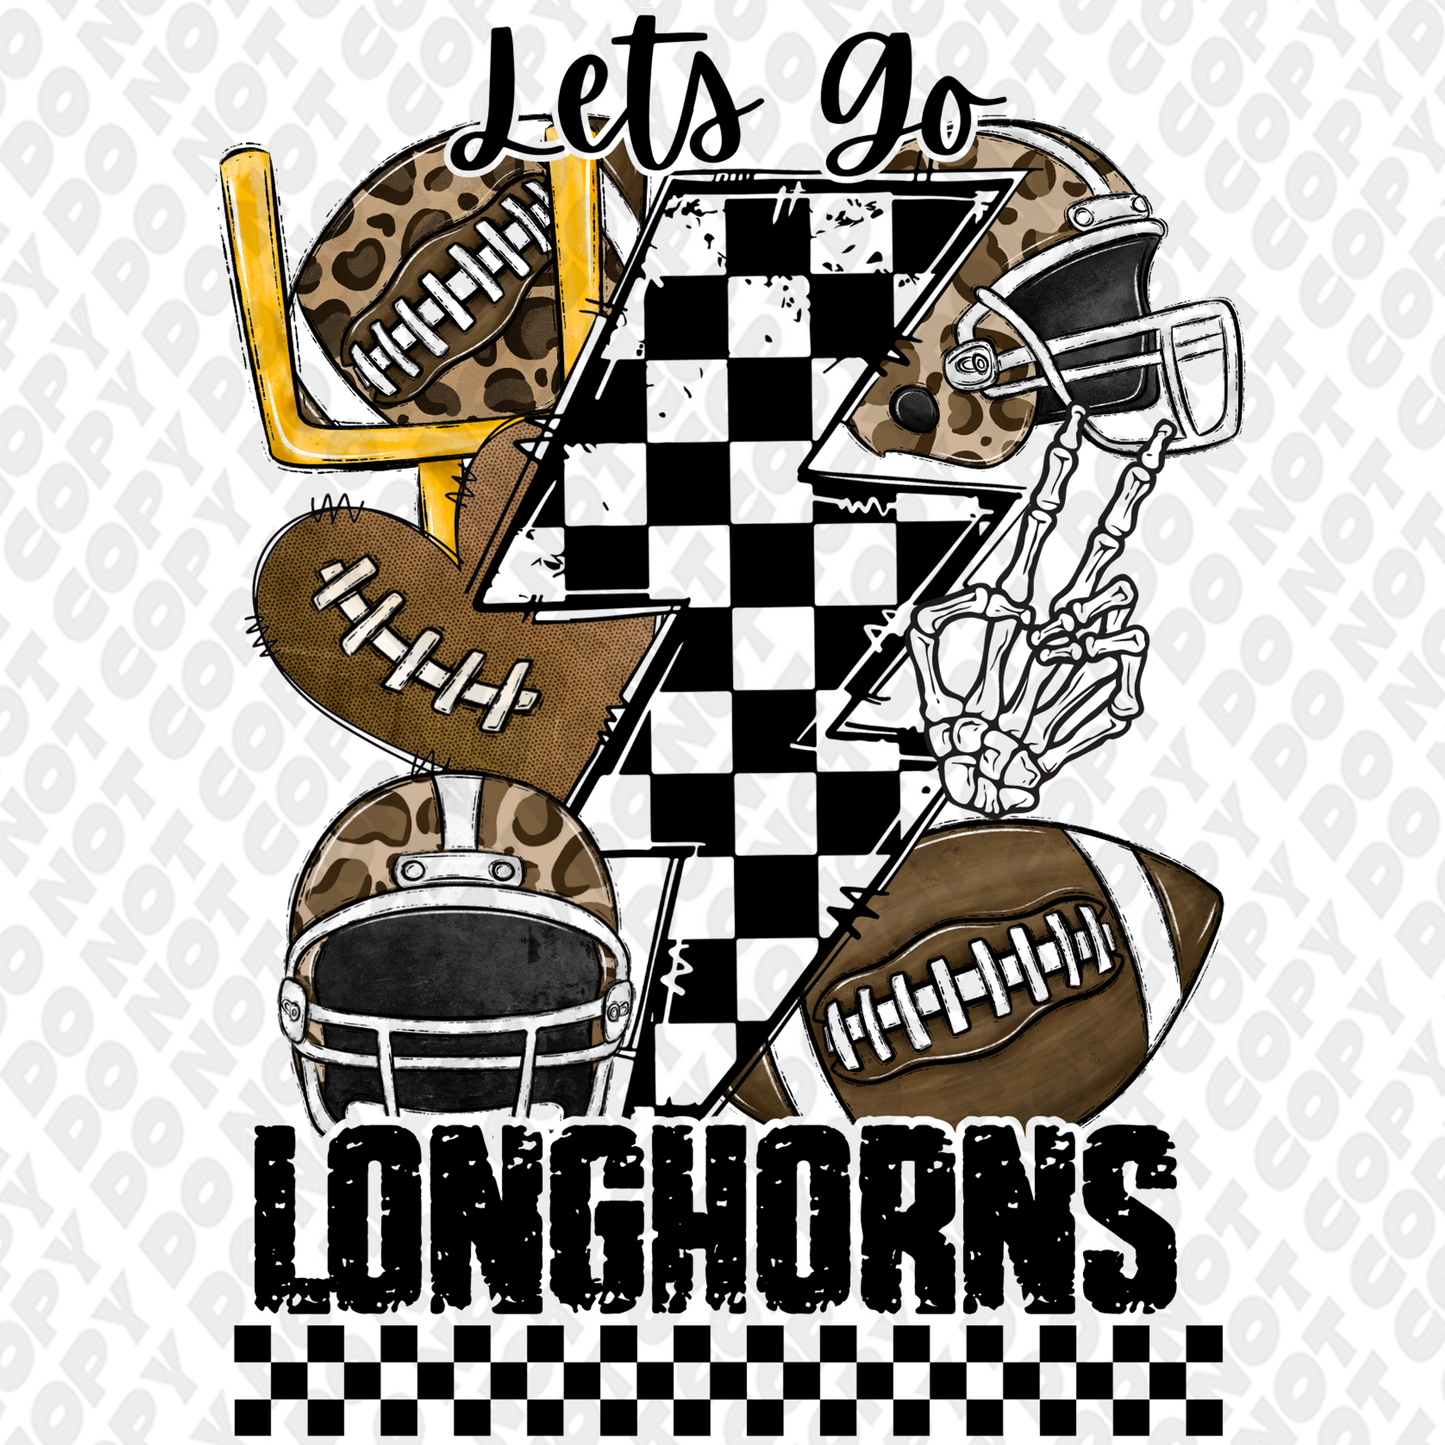 Let's go Longhorns